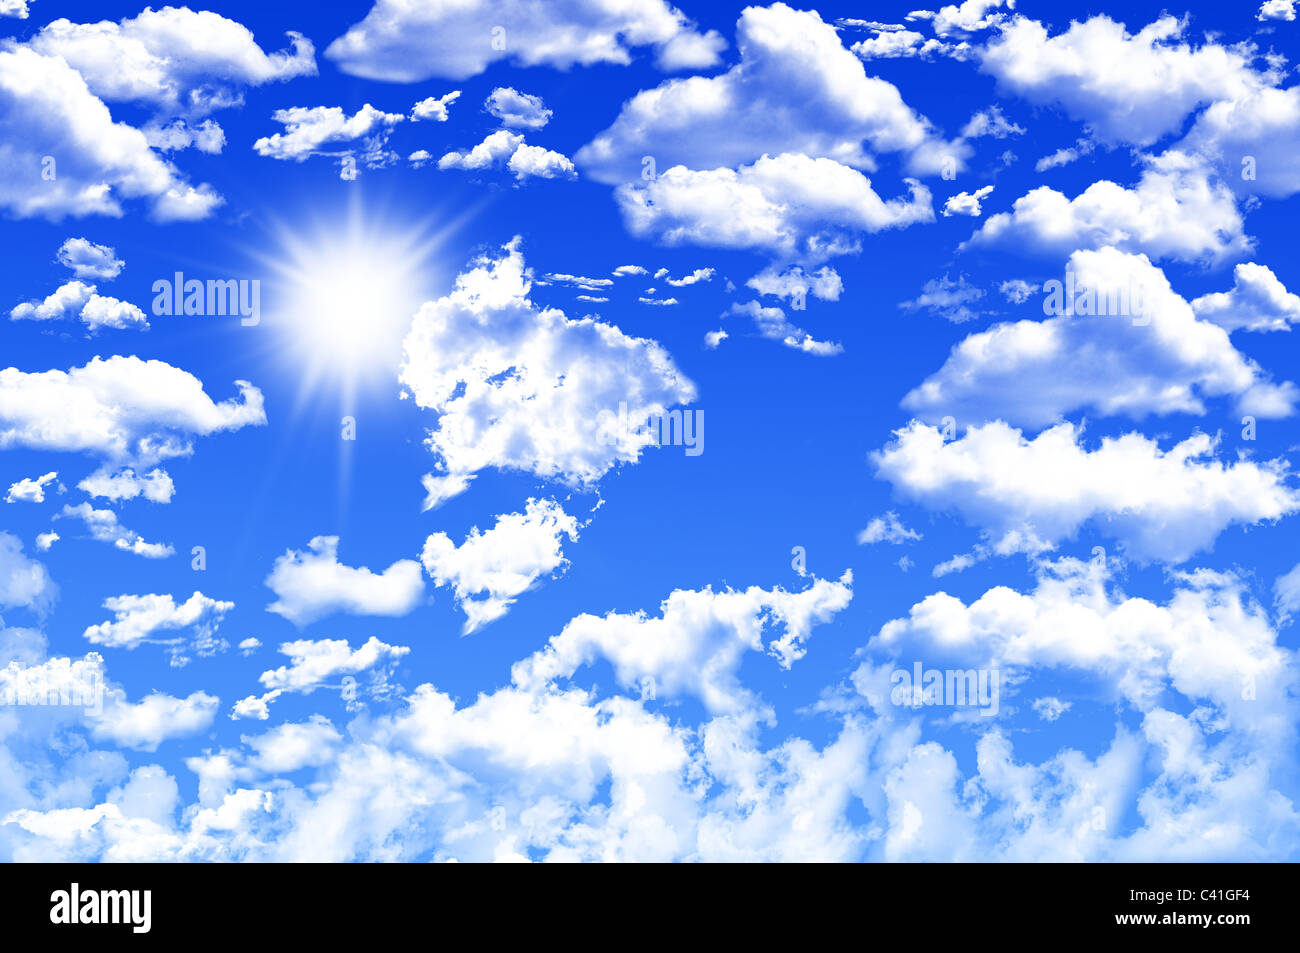 Khám phá 49+ hình ảnh blue cloudy sky background - thpthoangvanthu.edu.vn